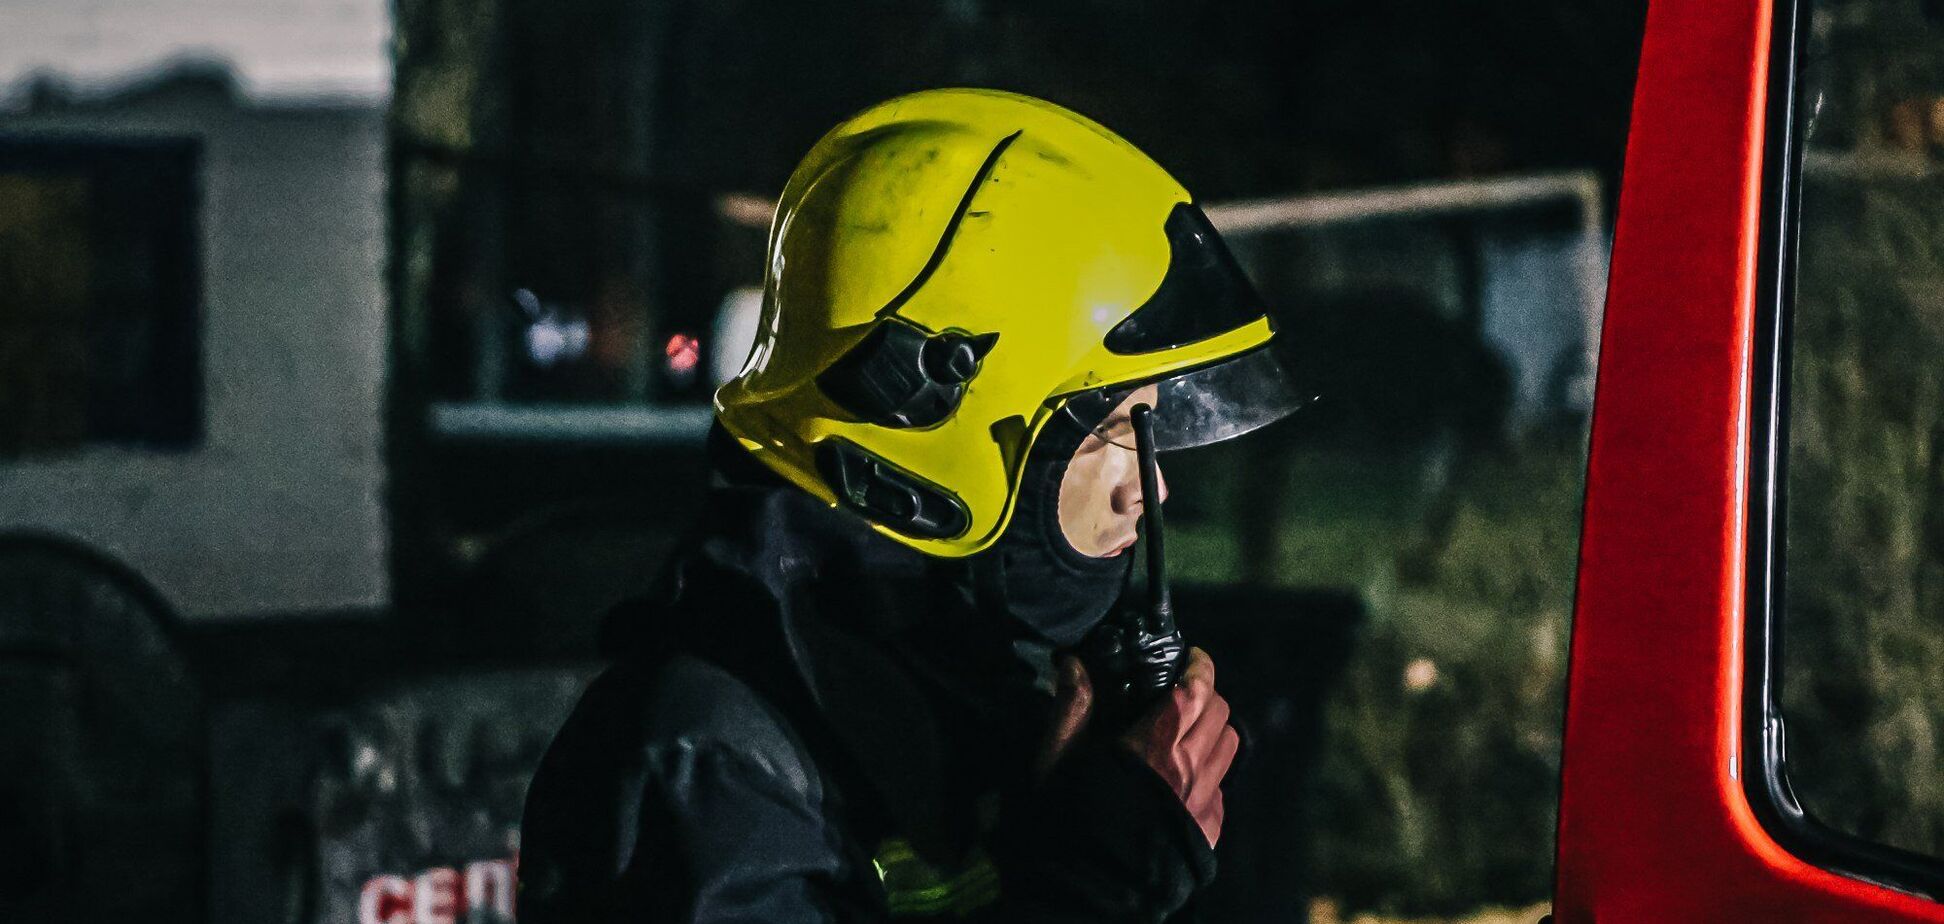 Під час гасіння пожежі рятувальники знайшли тіло чоловіка